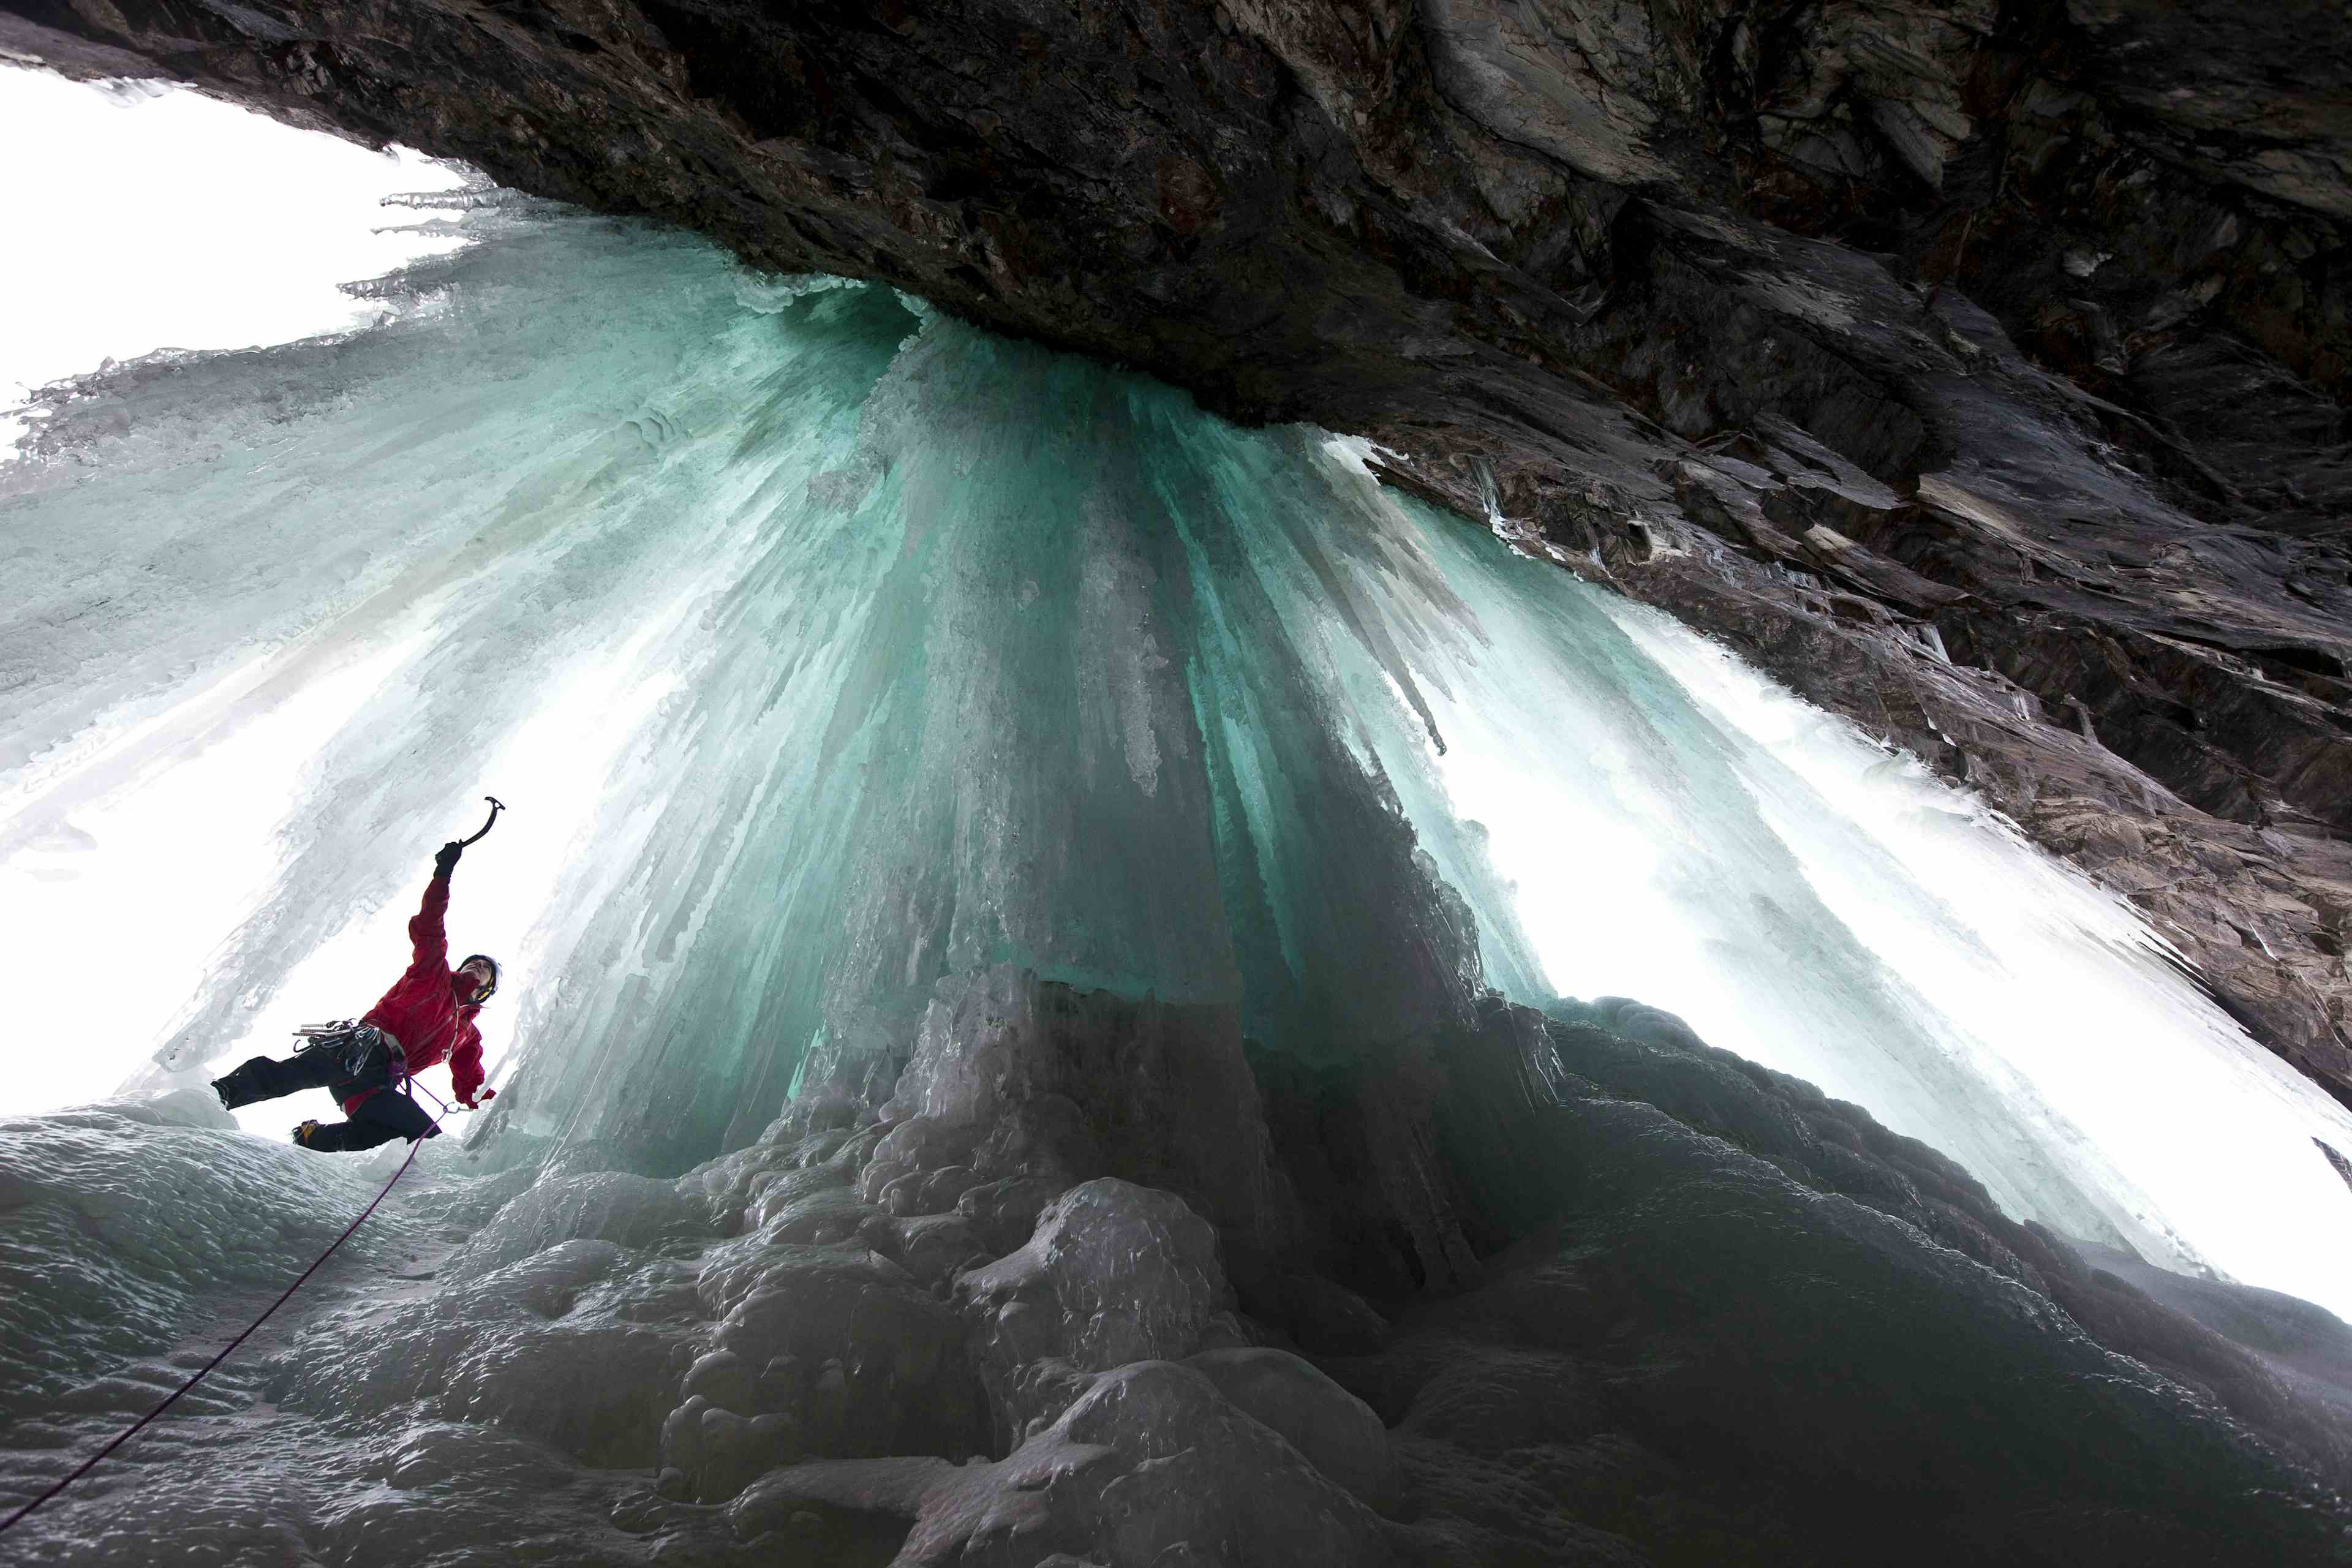 En isklatrer i rød jakke sett nedenfra klatrer den turkisfargede isen.